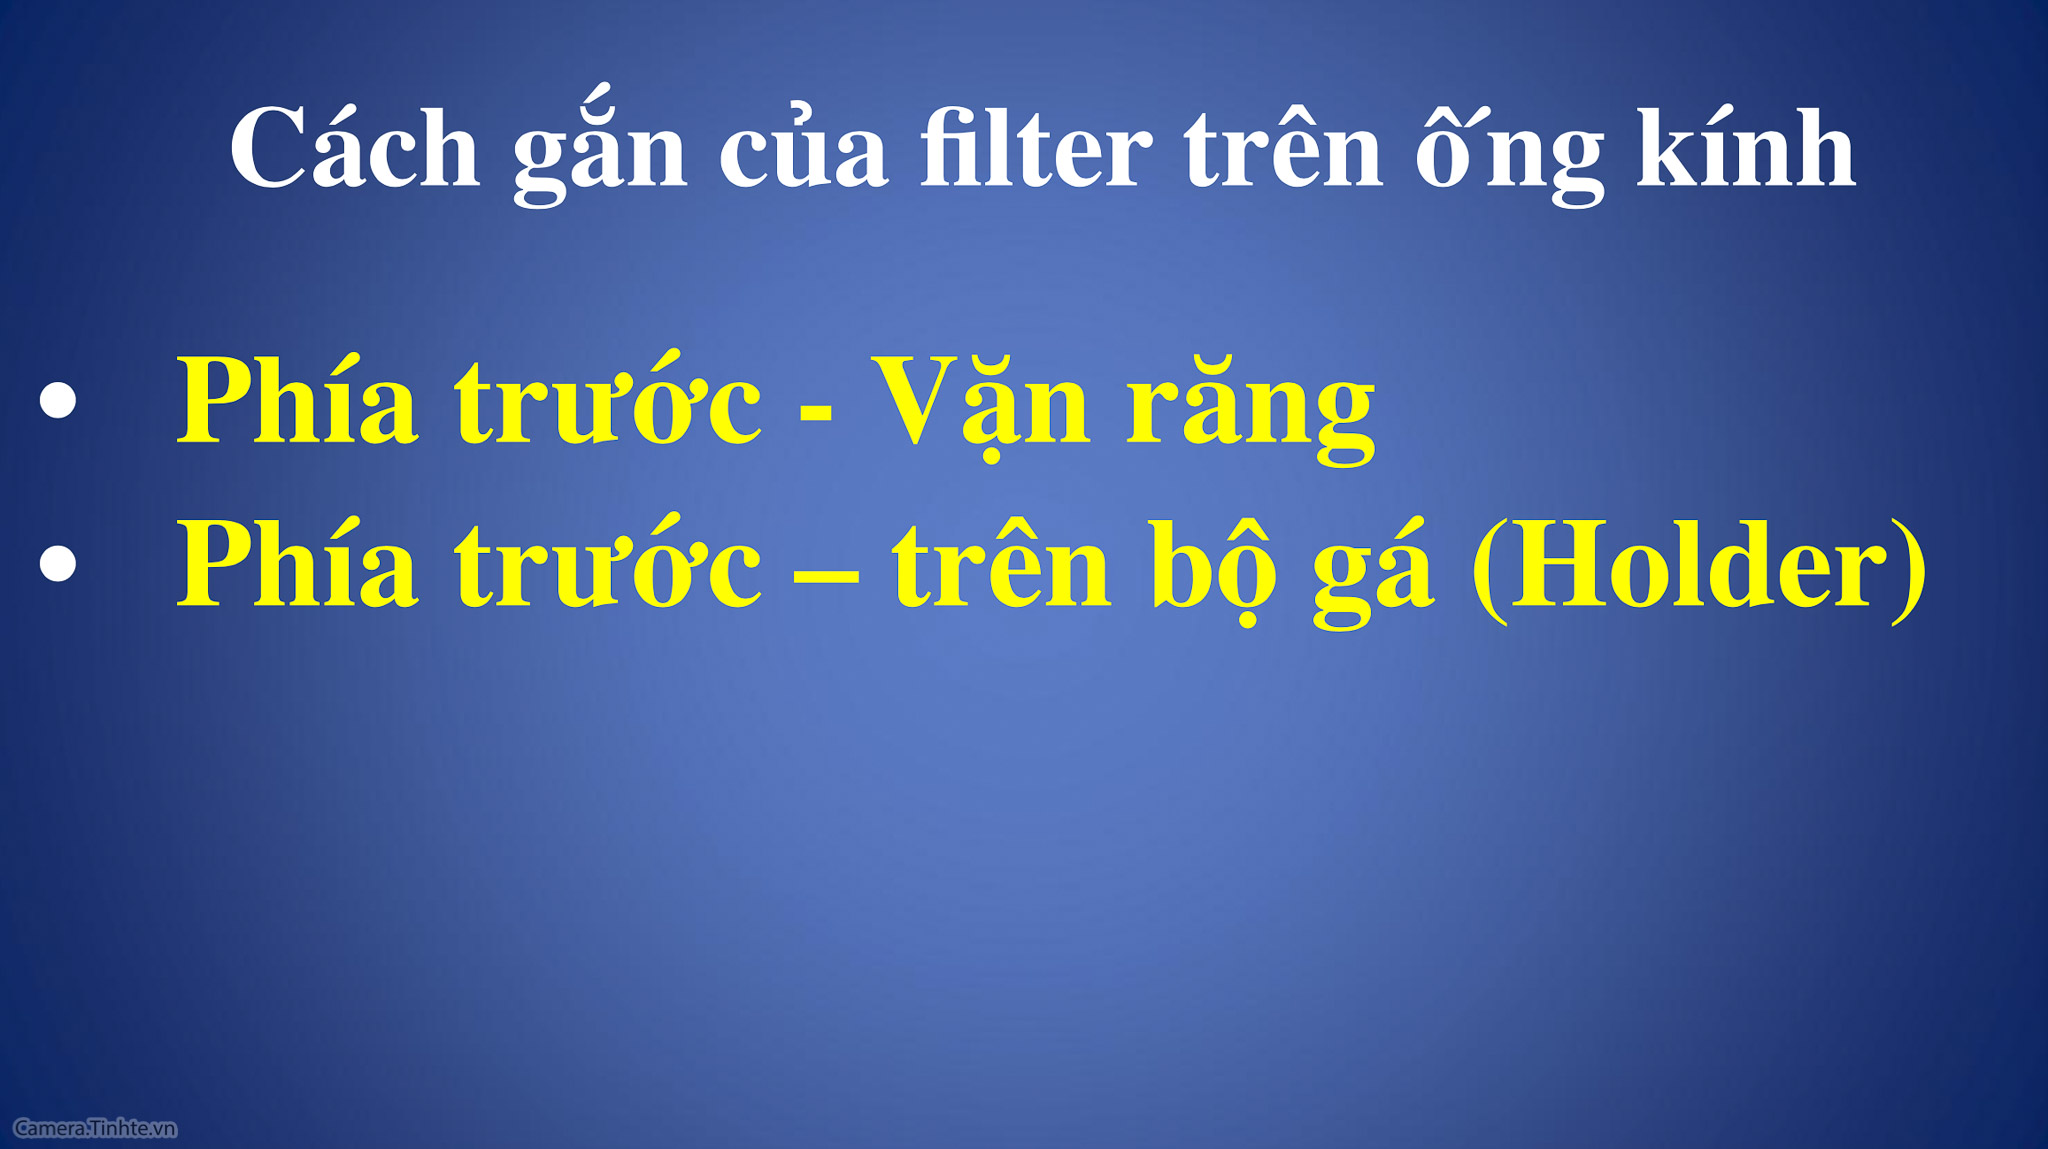 Workshop chia sẻ về kinh lọc filter - Camera.tinhte.vn-3.jpg